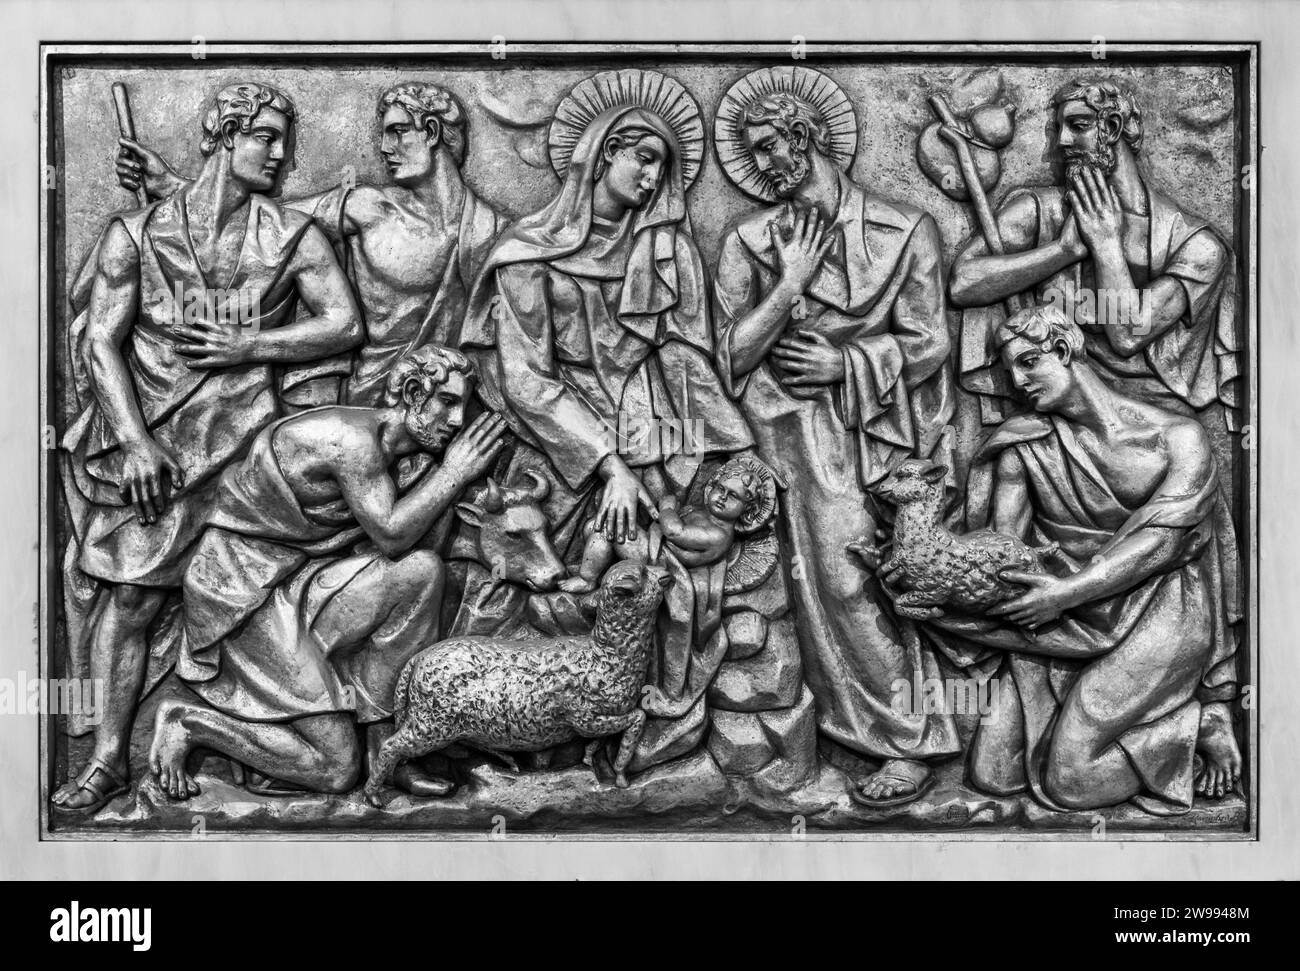 La Natività di Gesù a Betlemme – terzo mistero gioioso. Una scultura a rilievo nella Basilica di nostra Signora del Rosario di Fatima. Foto Stock